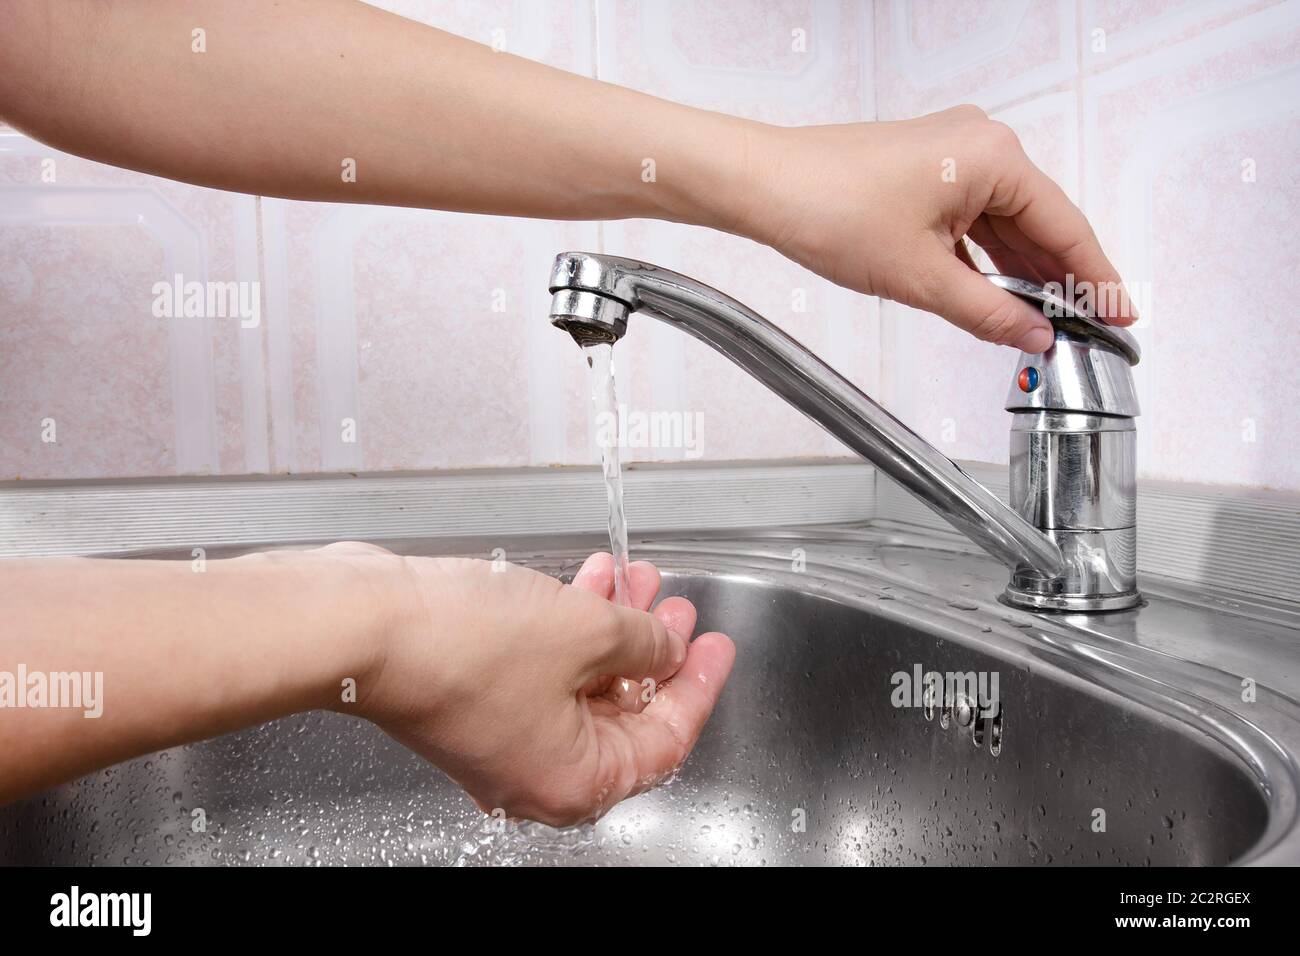 La main des femmes tourne sur un robinet Banque D'Images